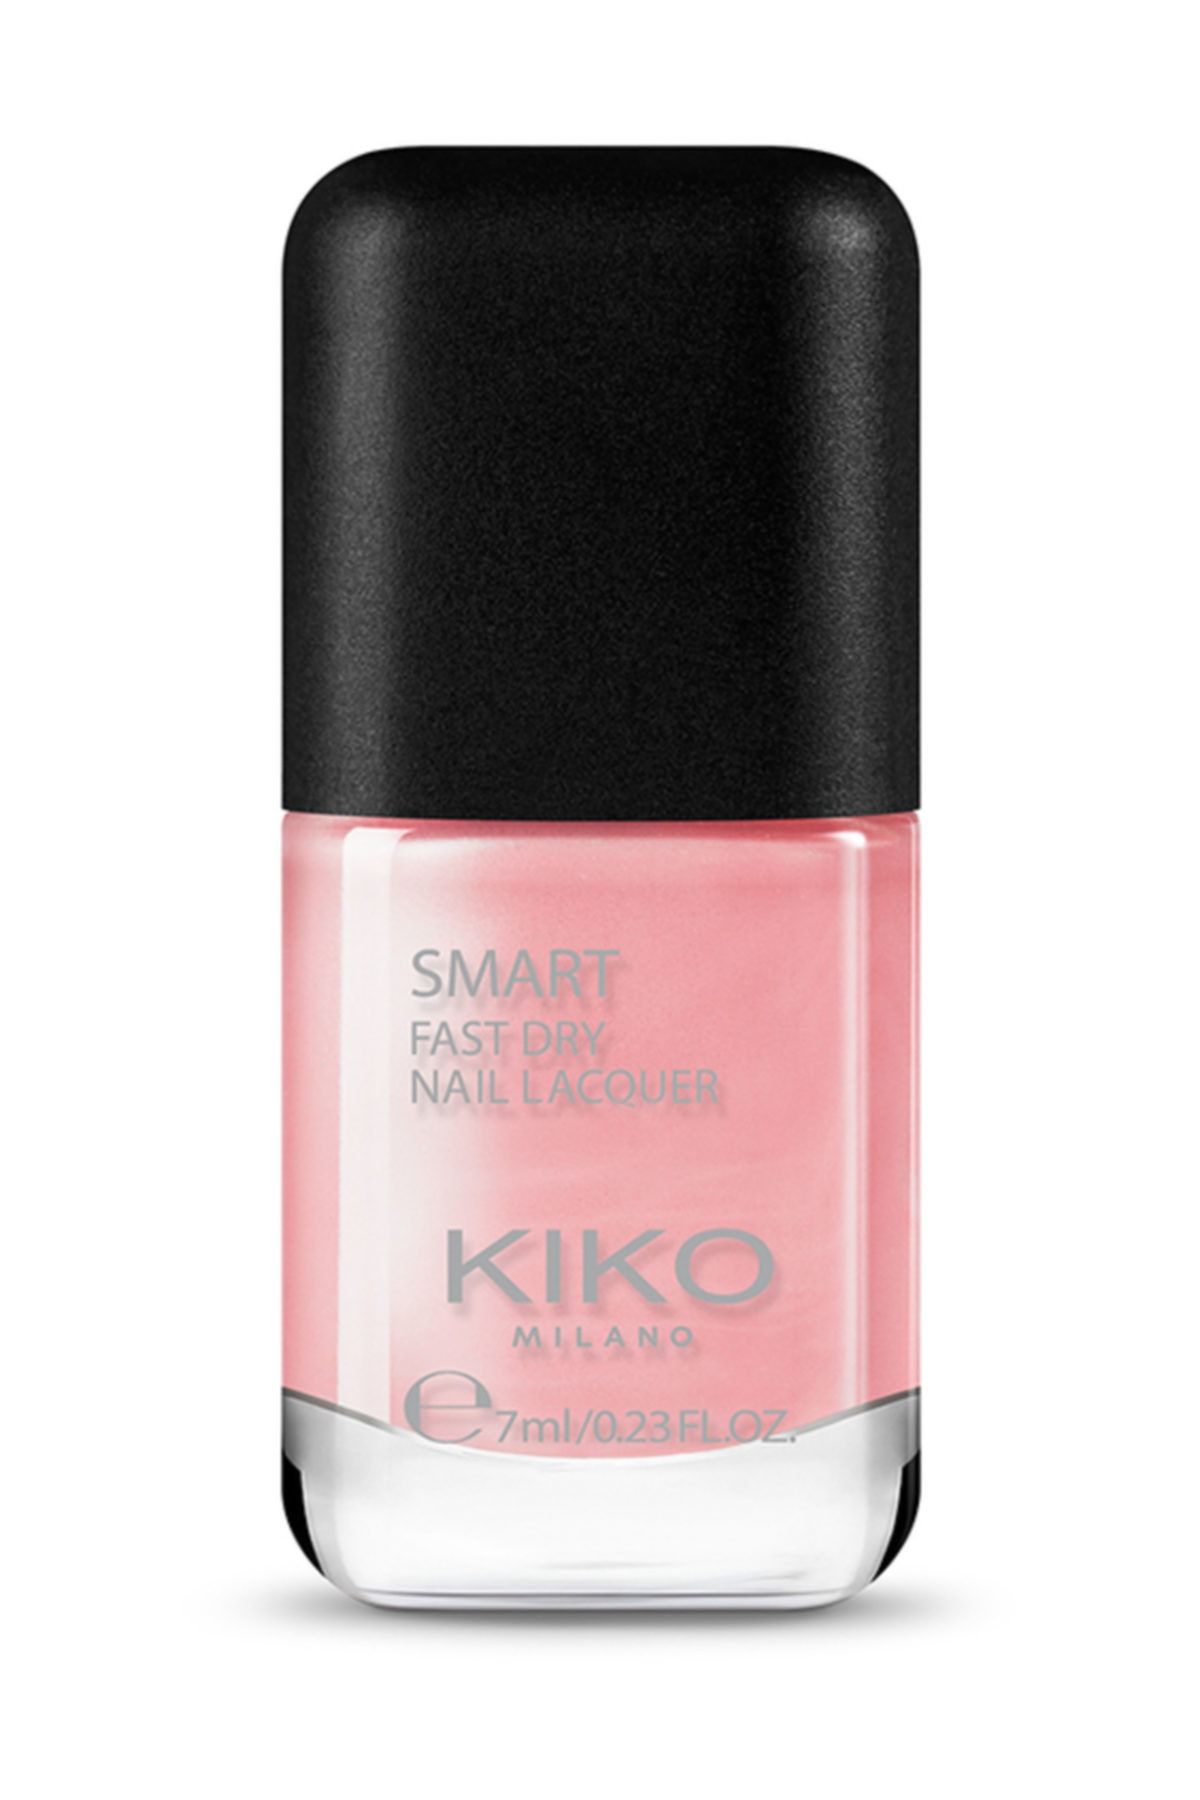 KIKO Smart Fast Dry Nail Lacquer 48 Oje